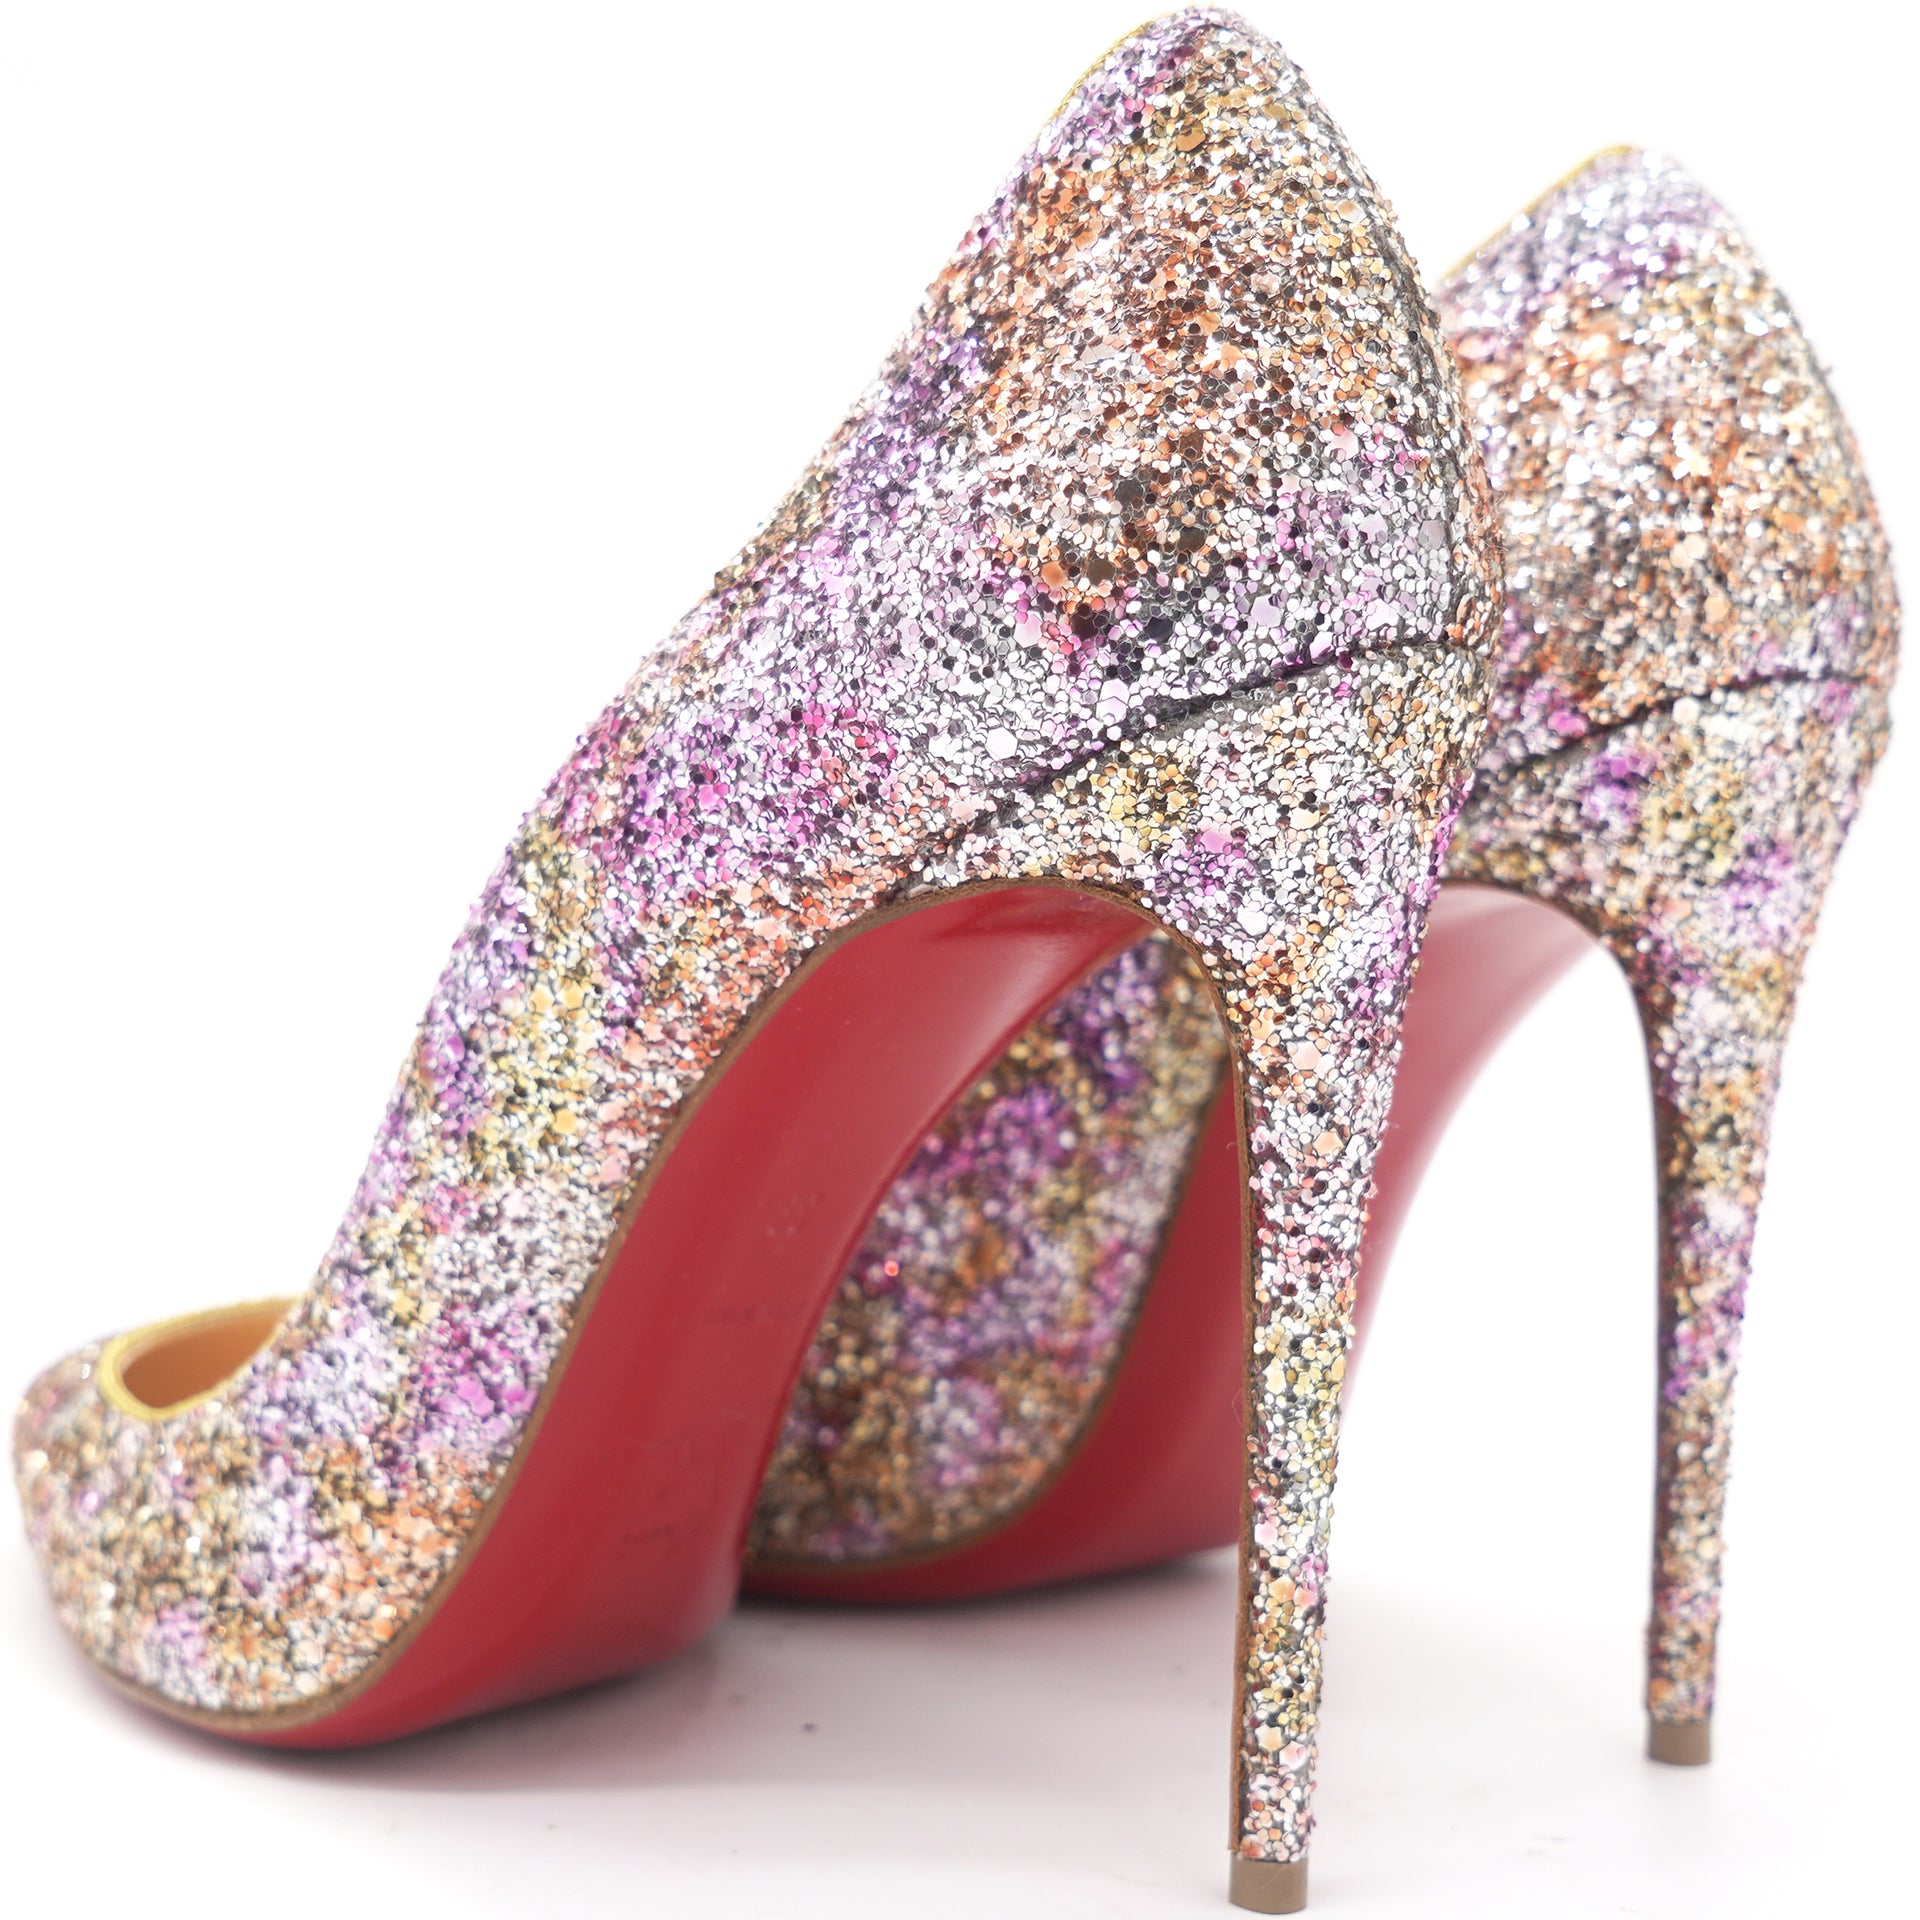 Louboutin 'Simple' Glitter 5 inch heel, sz 39.5